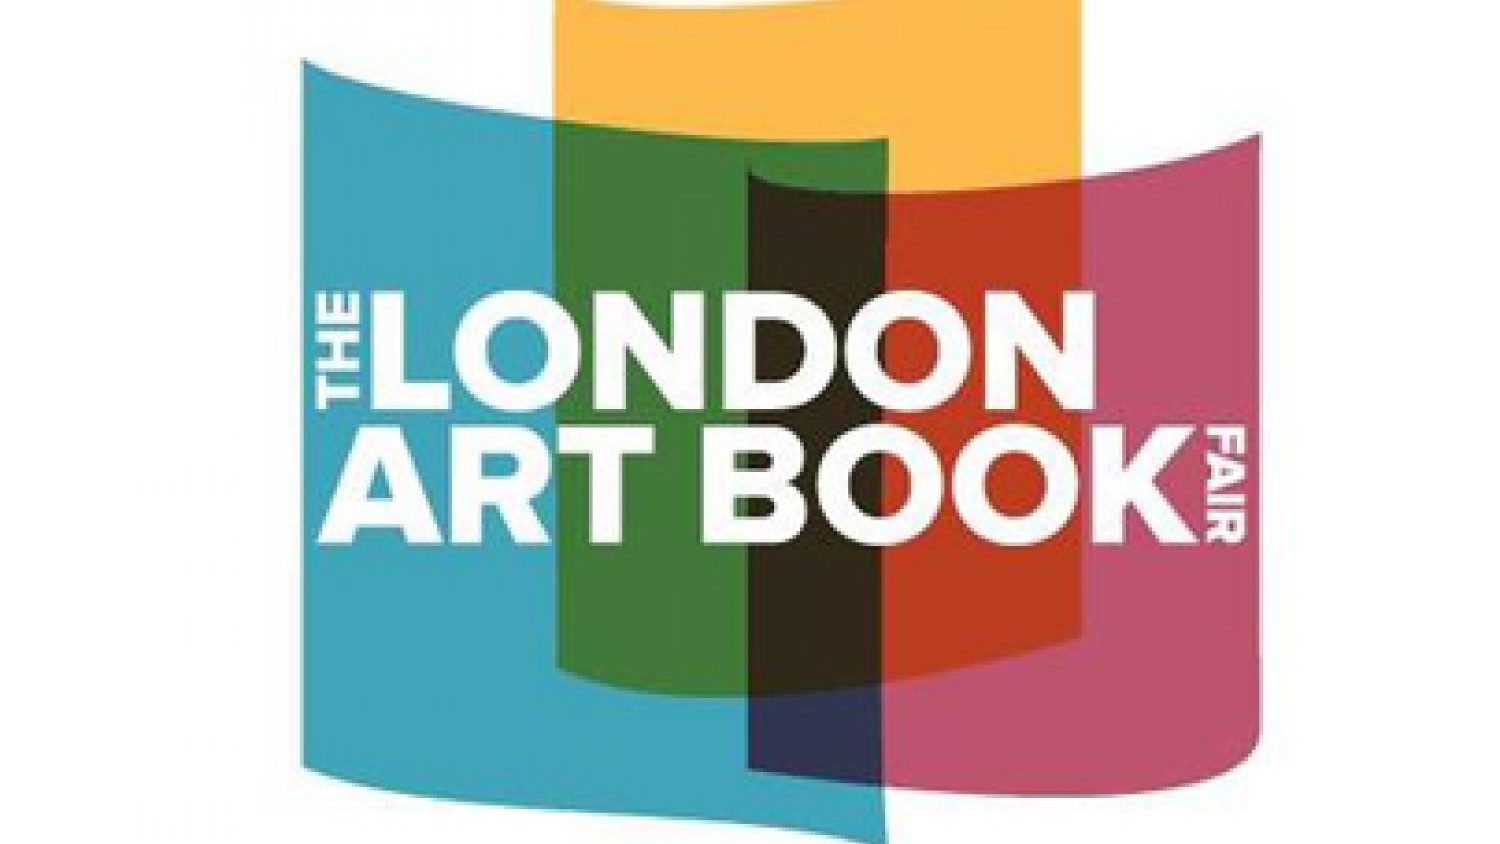 London Art Book Fair